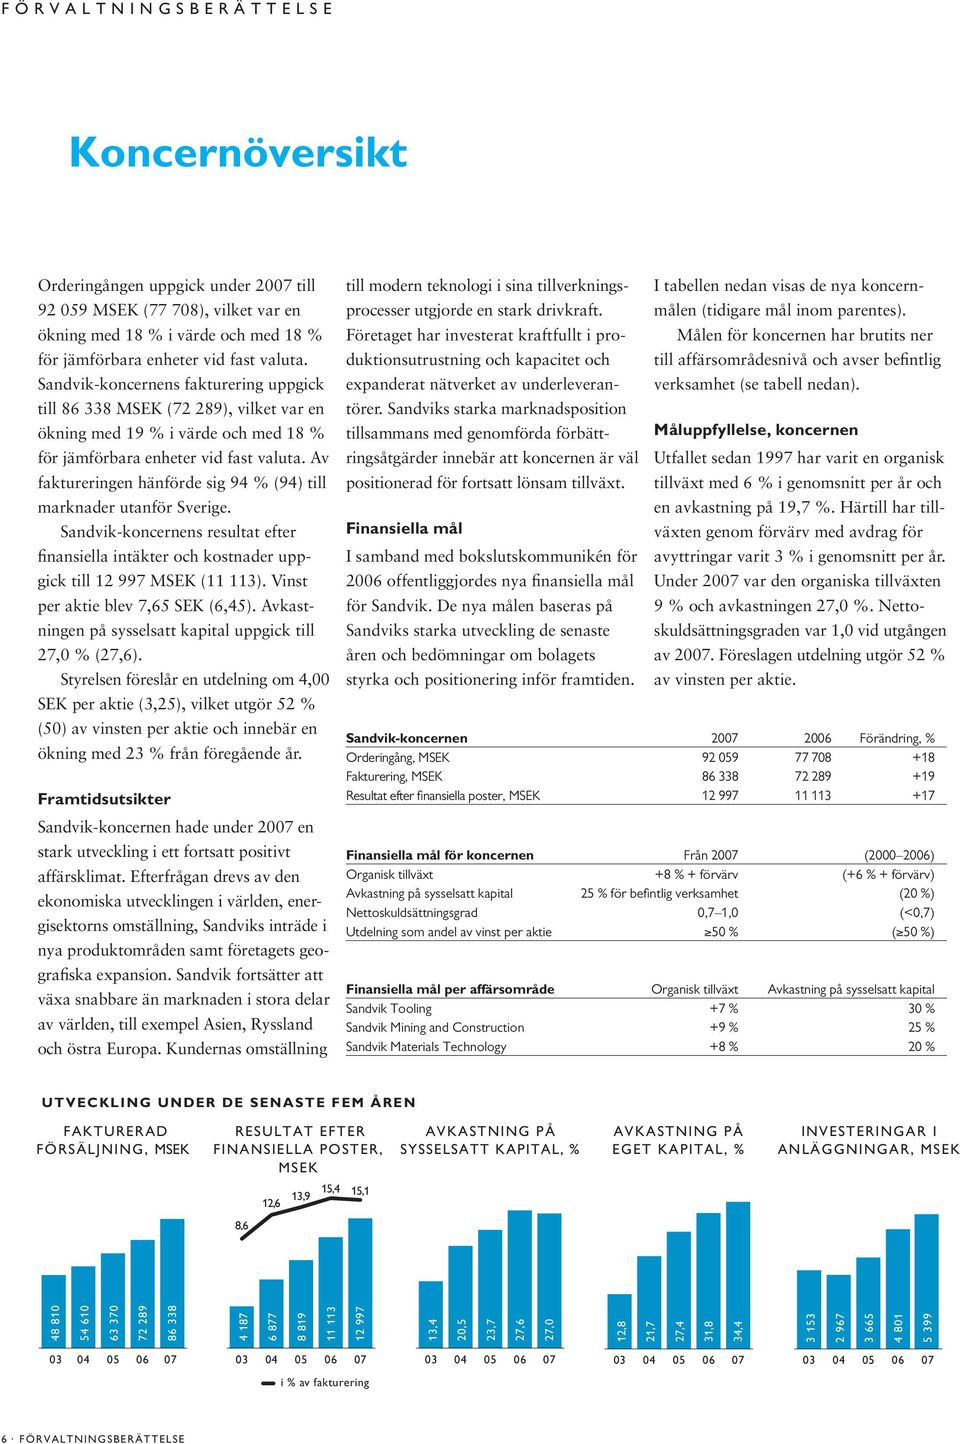 Av faktureringen hän förde sig 94 % (94) till marknader utanför Sverige. Sandvik-koncernens resultat efter finansiella intäkter och kostnader uppgick till 12 997 MSEK (11 113).